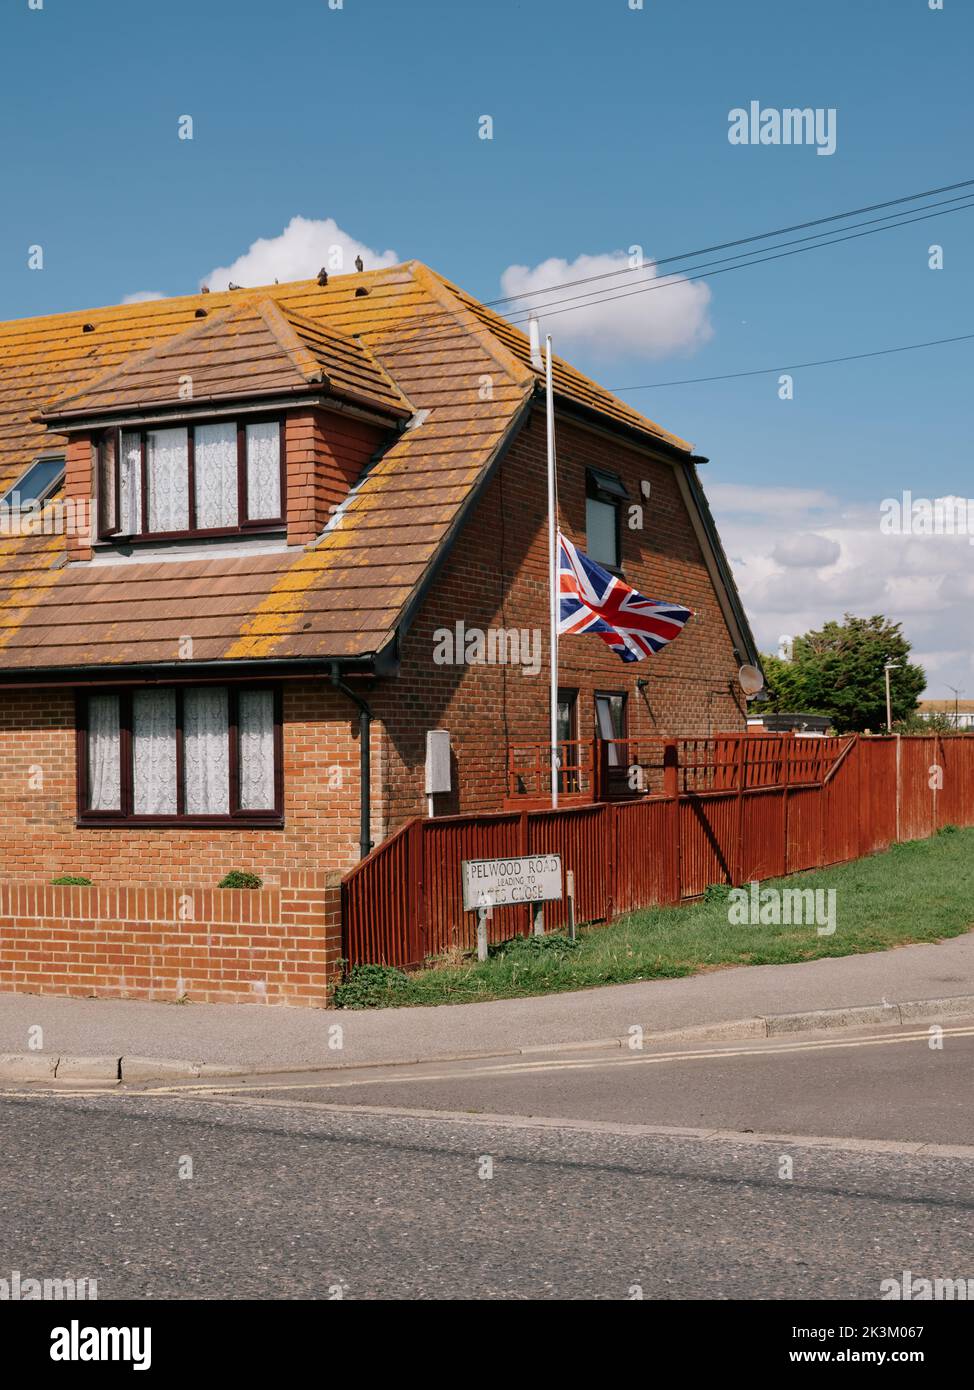 Eine britische Unionsflagge fliegt am halben Mast in Trauer um die Passierung der Königin in einer Wohnsiedlung in einem Vorort Lydd, Sussex, England, Großbritannien - September 2022 Stockfoto